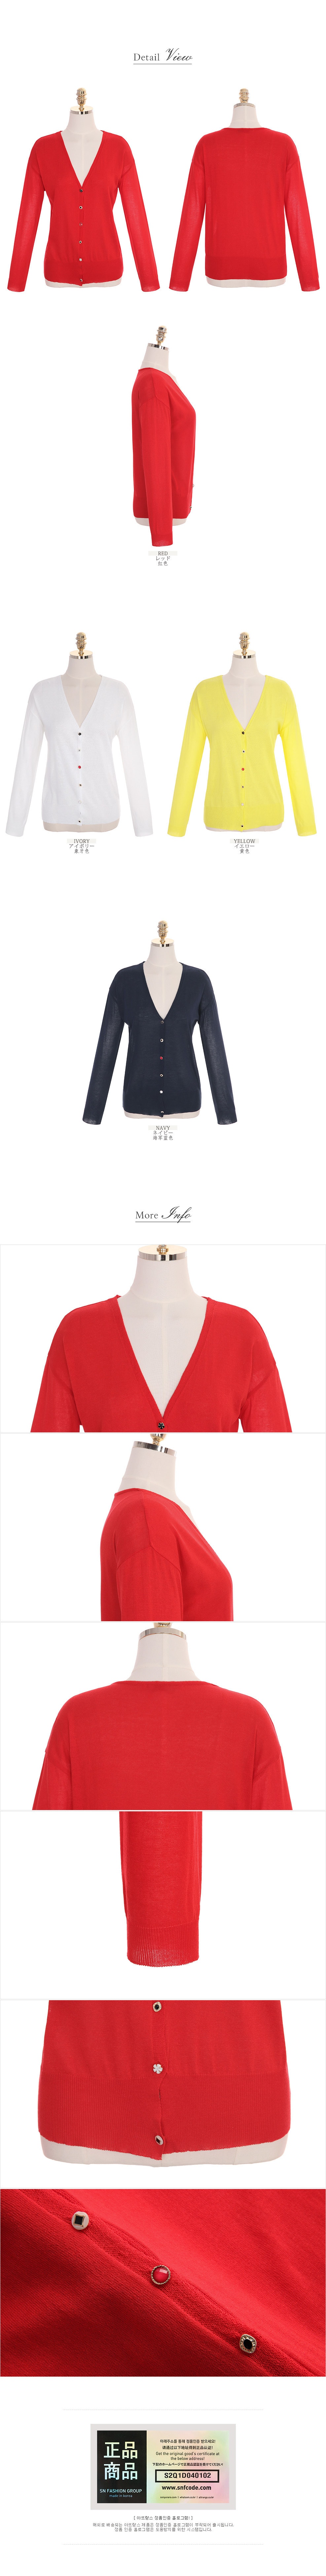 【韩国直邮】ATTRANGS V领纽扣薄款修身气质开襟衫 红色 均码